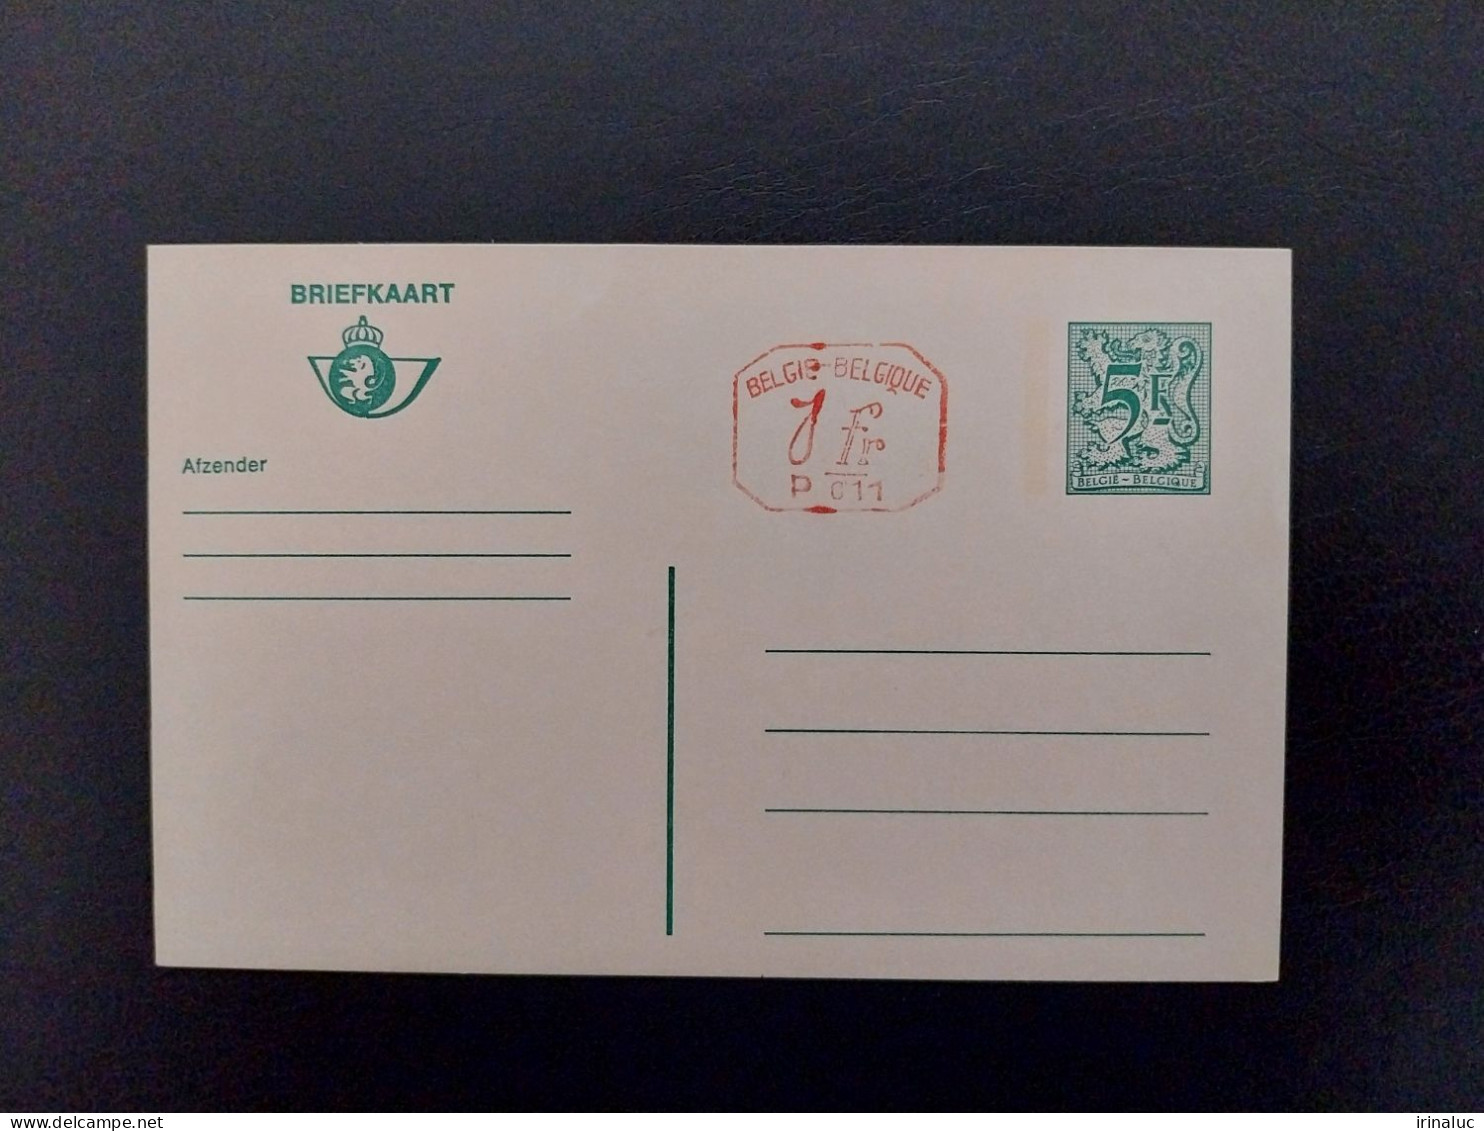 Briefkaart 187-IV P011 - Postkarten 1951-..